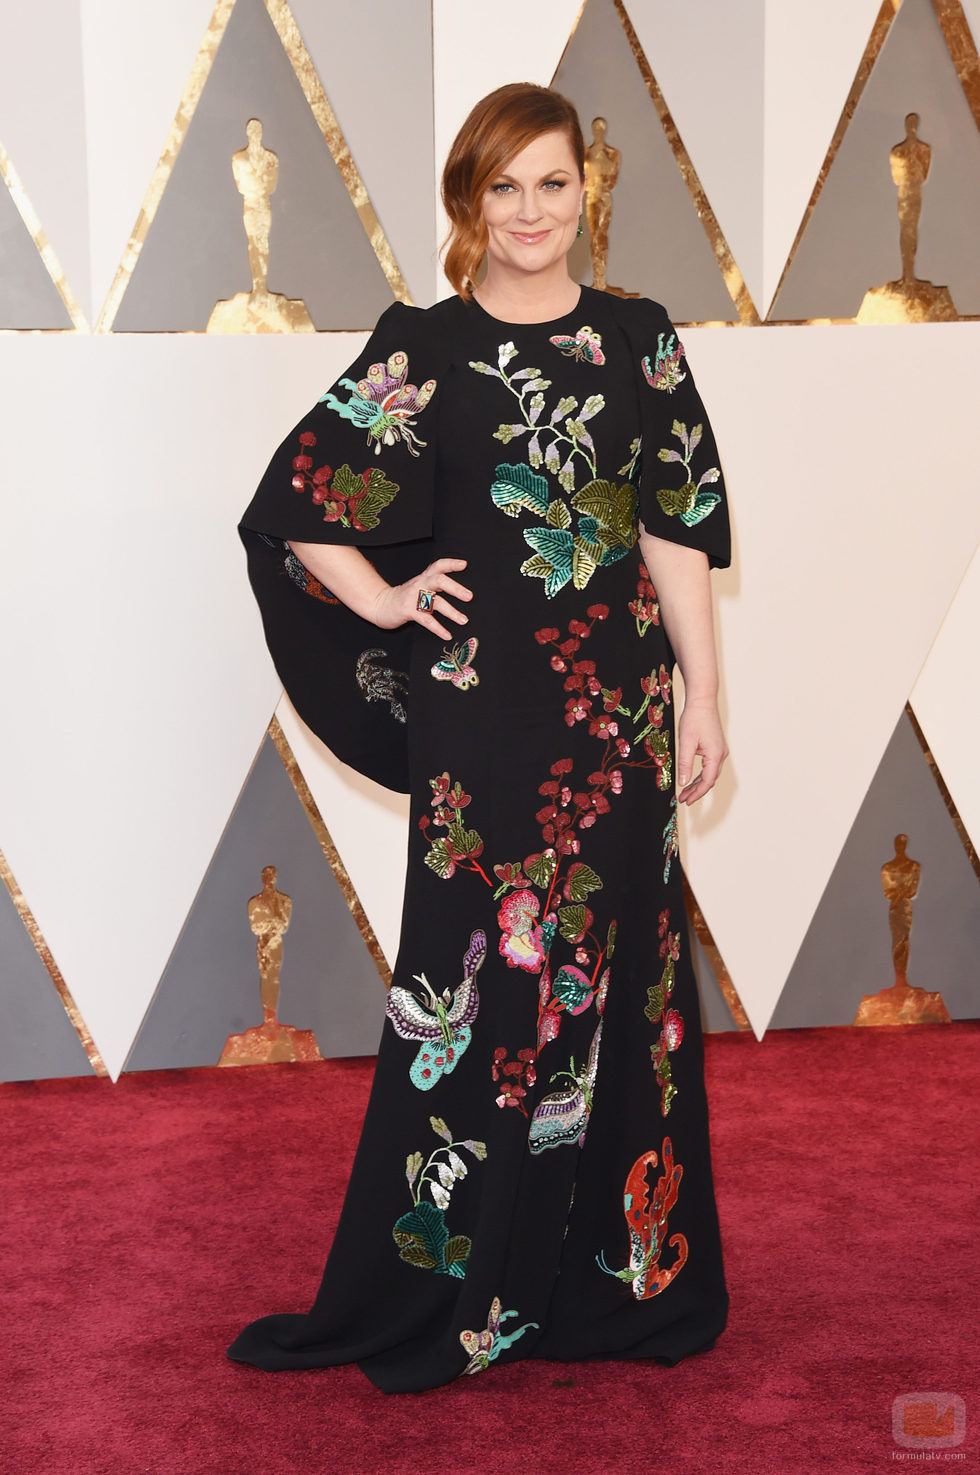 Amy Poehler en la alfombra roja de los Premios Oscar 2016